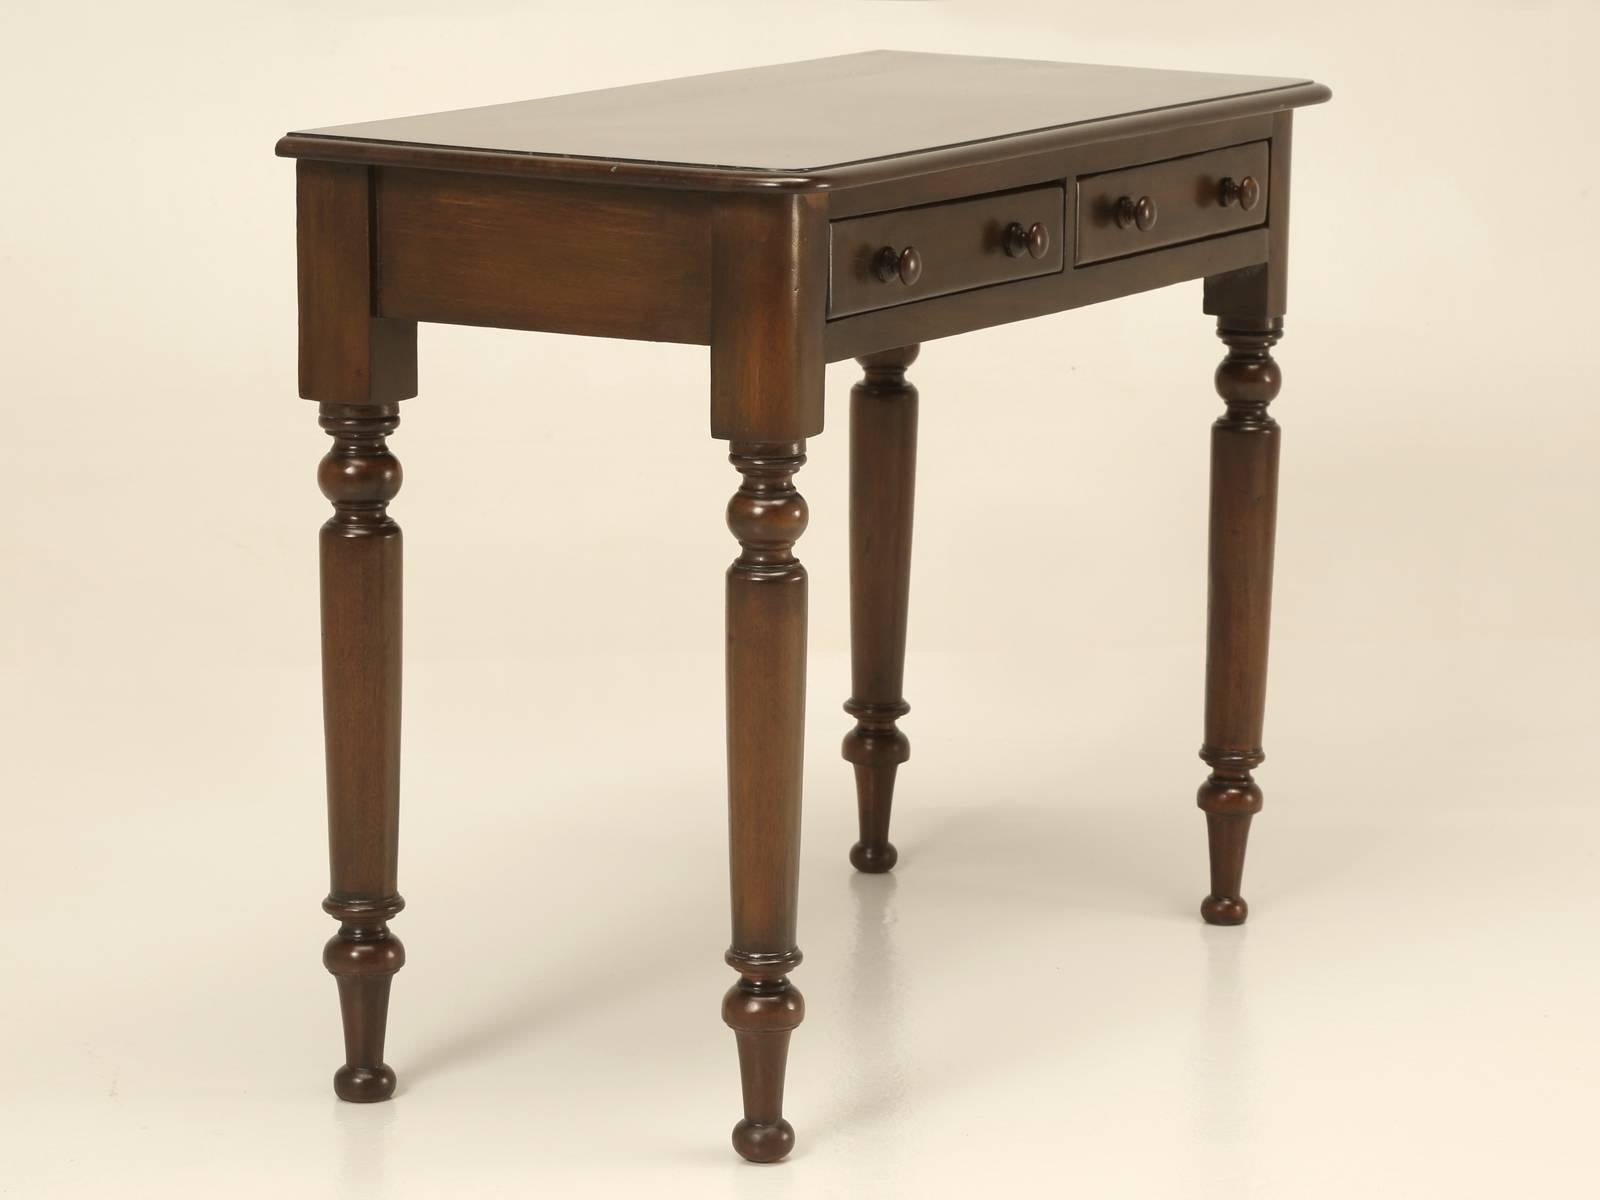 Petite table console ou bureau de dame, fabriquée en France à la fin des années 1800 en acajou massif. Magnifiquement restauré, tant sur le plan structurel que cosmétique, il est prêt pour les 100 prochaines années de service. De plus, les petites